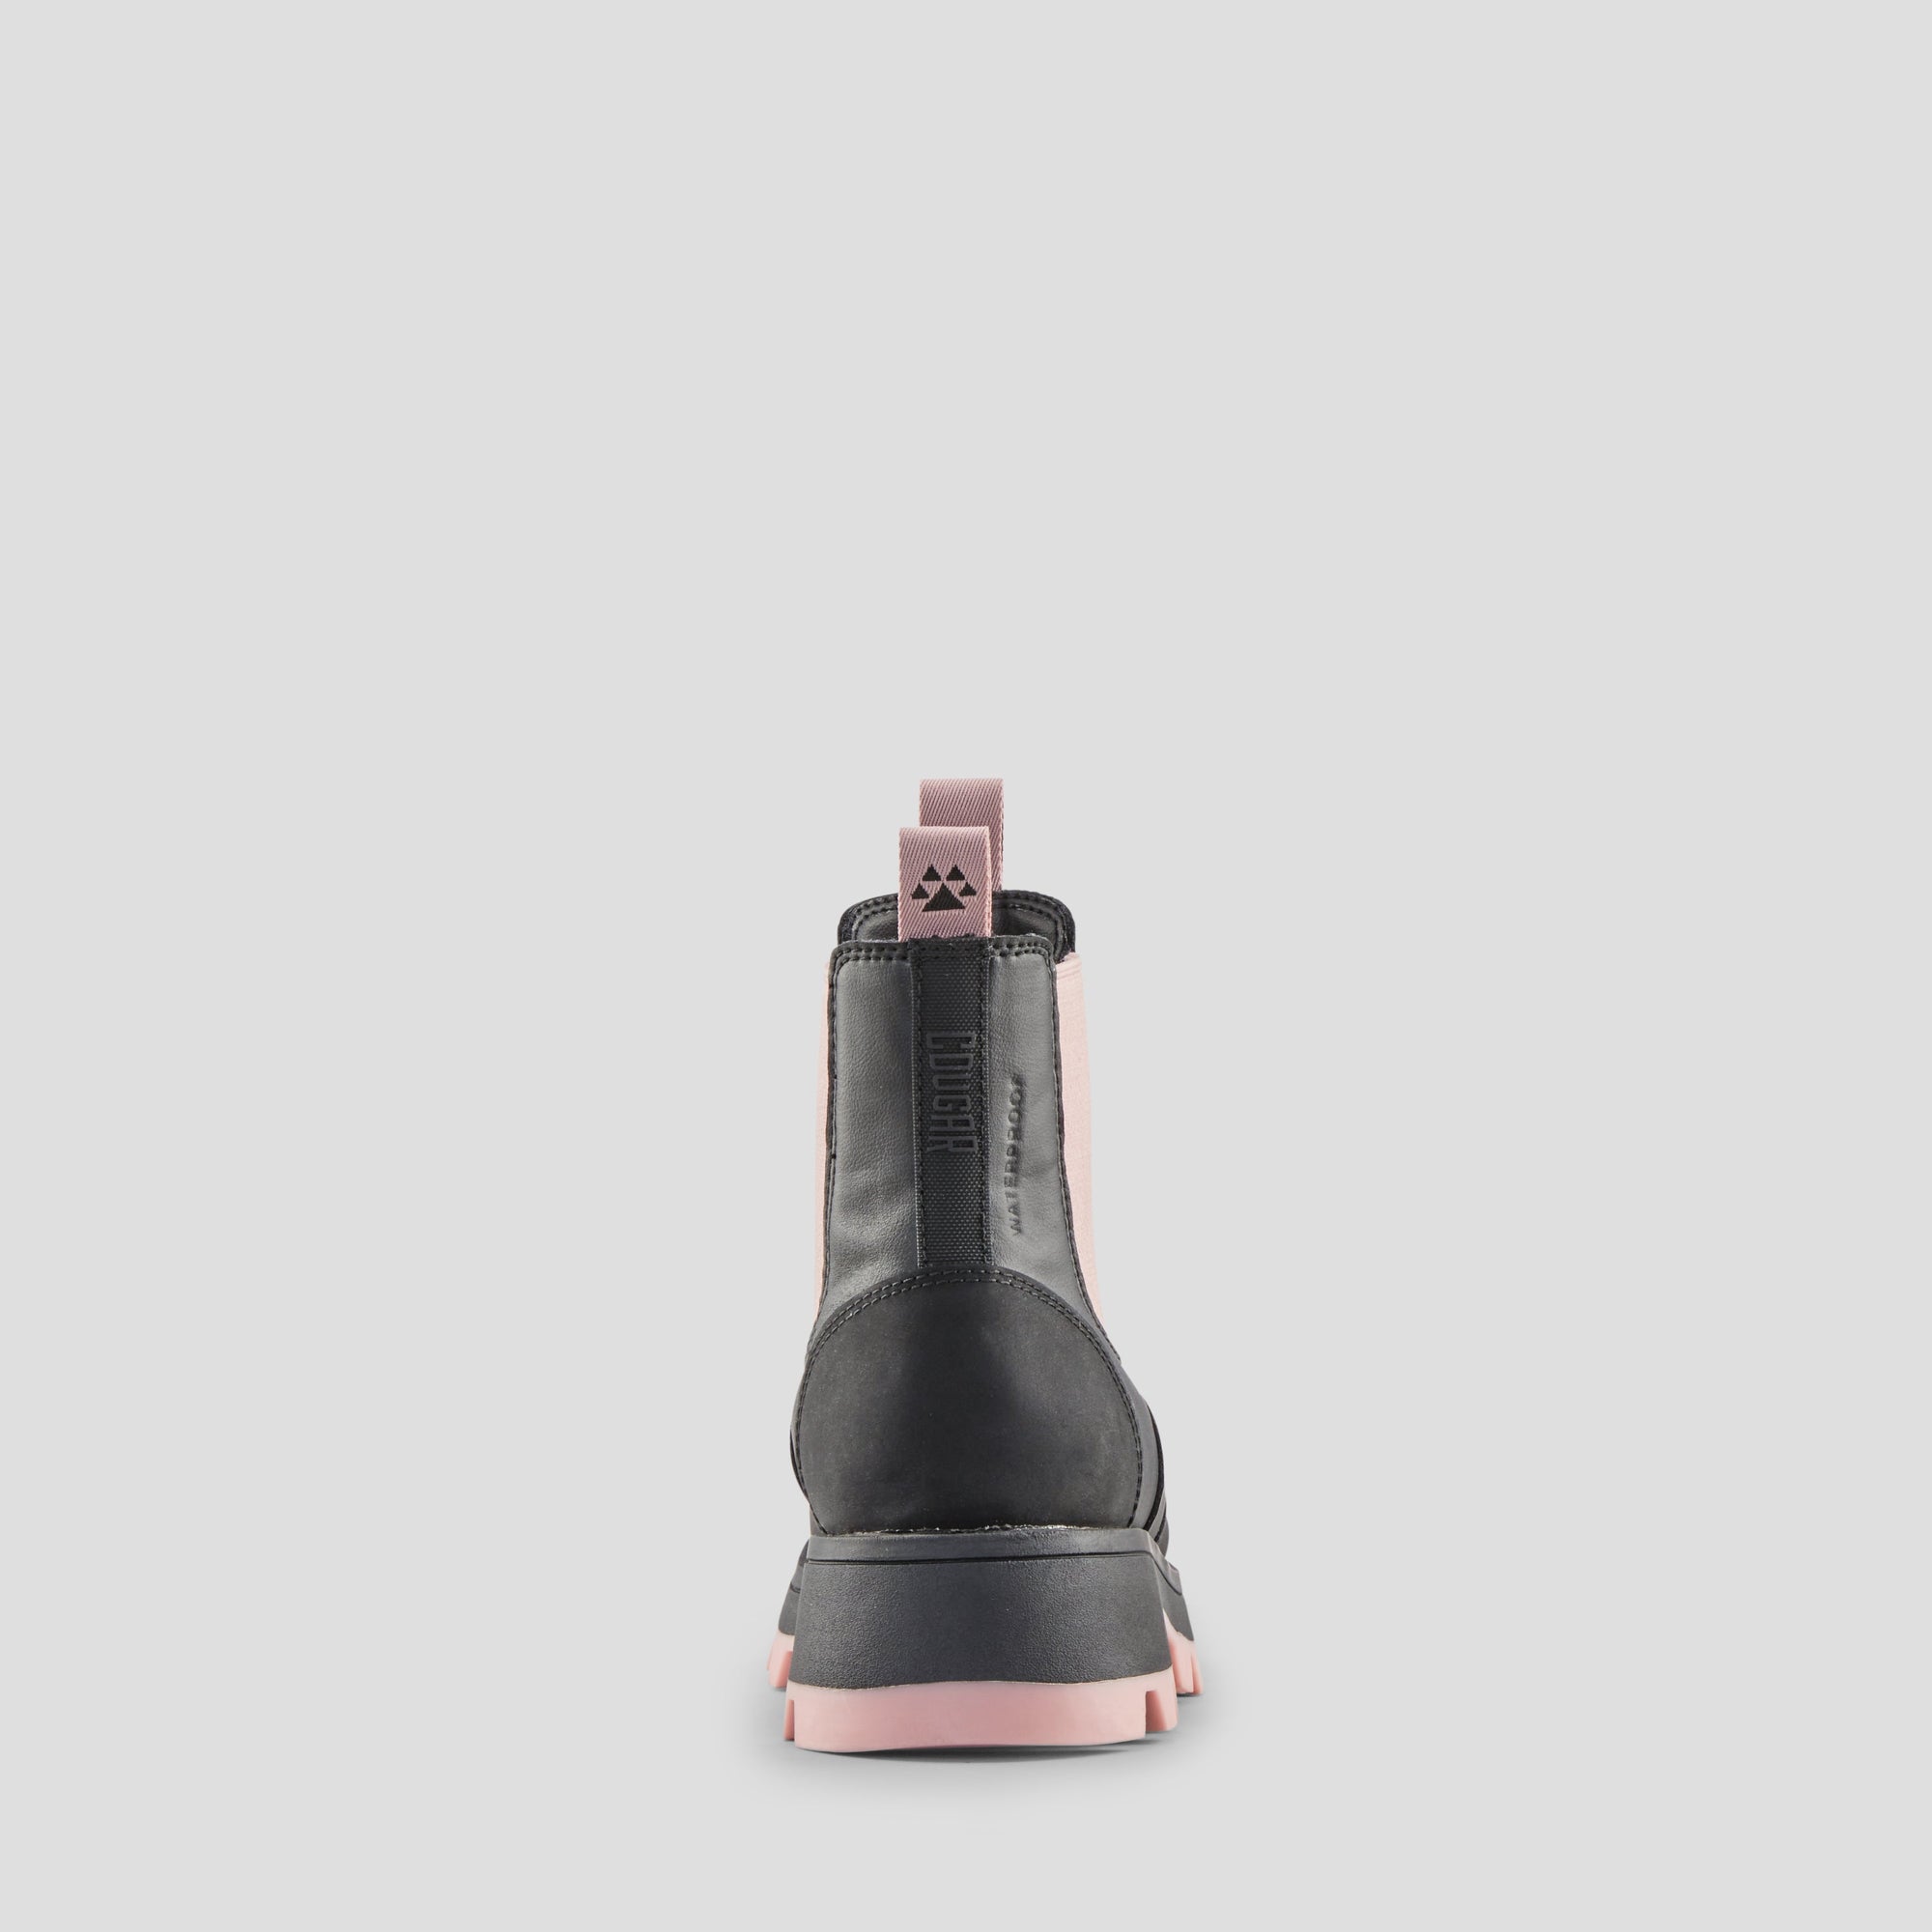 Shani K - Botte imperméable en cuir synthétique (Junior+) - Colour Black-Dusty Pink